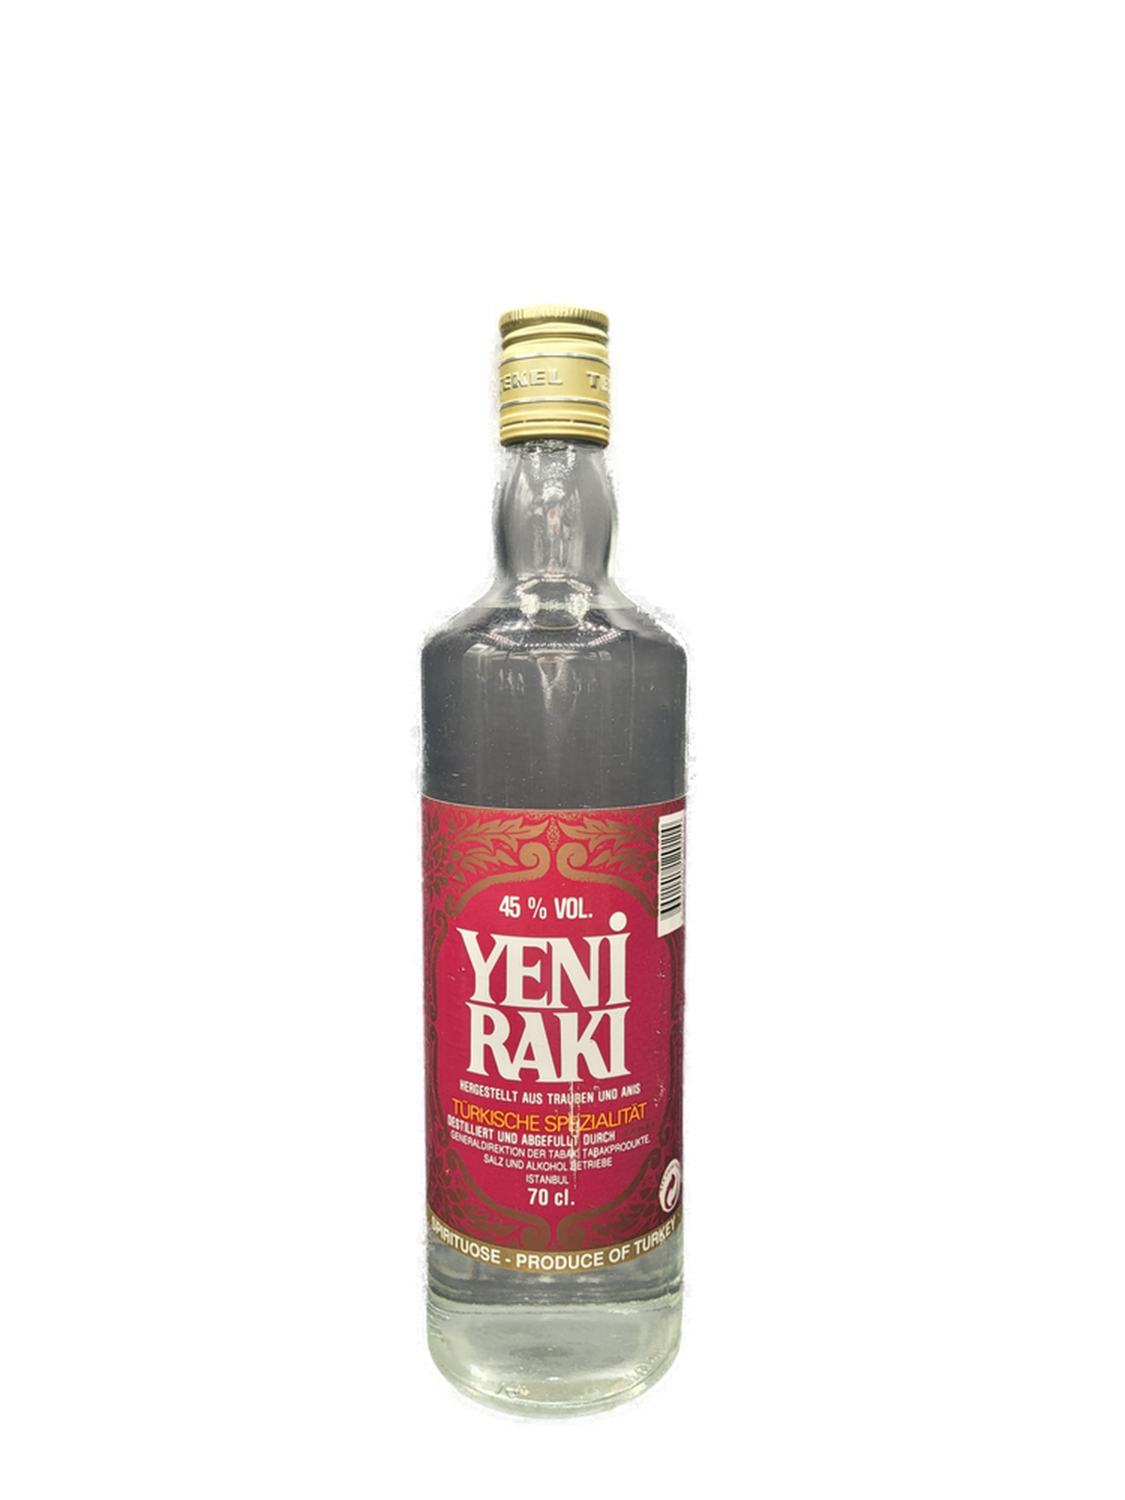 Yeni Raki Türkei 45% VOL. alte Ausführung